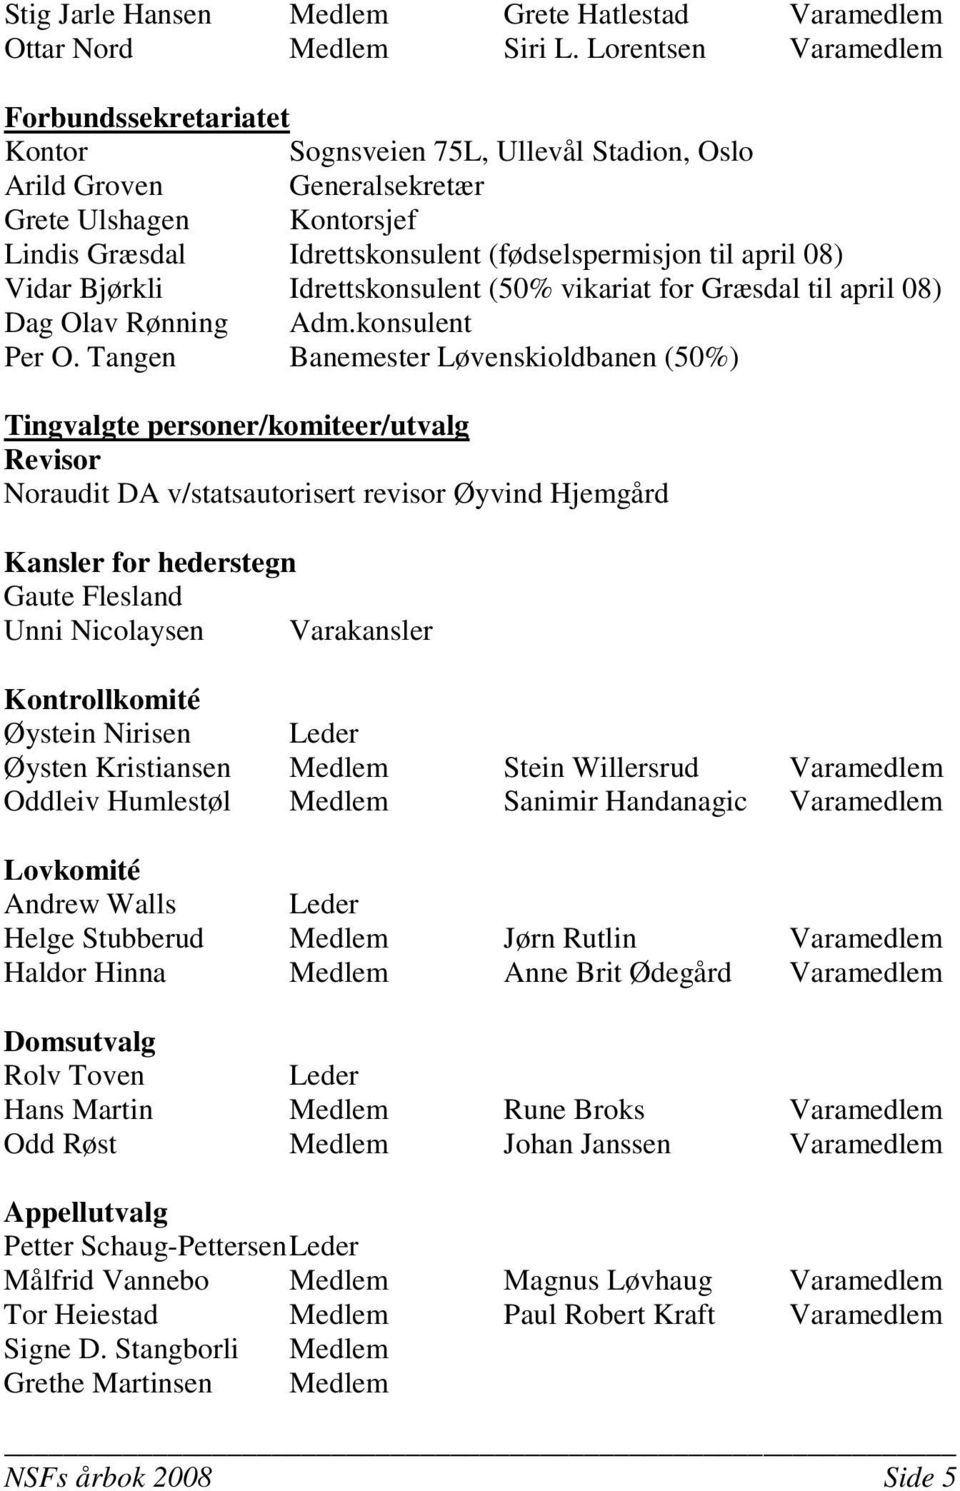 april 08) Vidar Bjørkli Idrettskonsulent (50% vikariat for Græsdal til april 08) Dag Olav Rønning Adm.konsulent Per O.